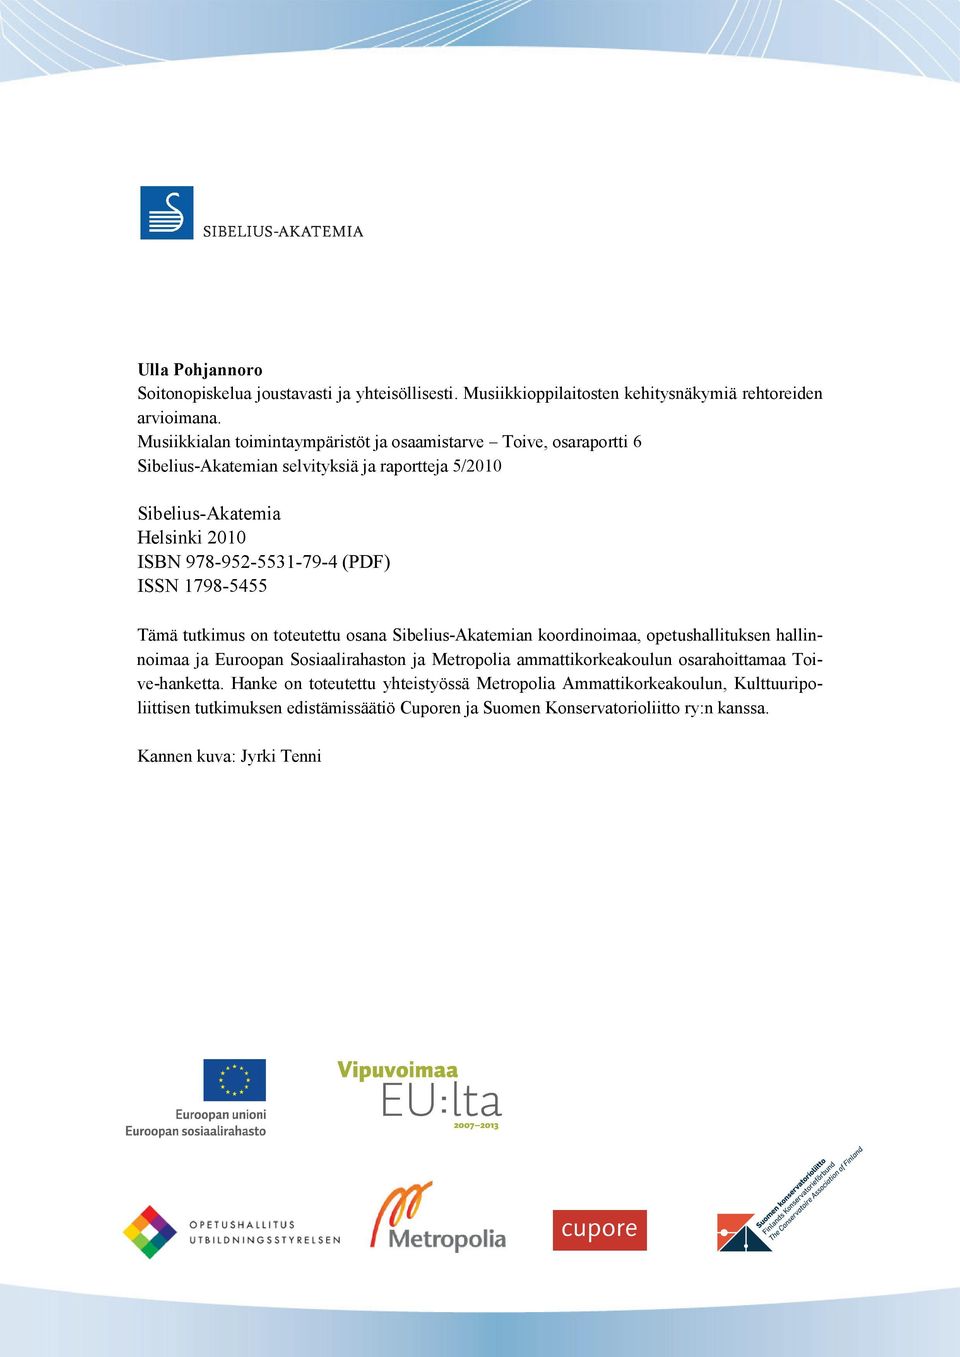 (PDF) ISSN 1798-5455 Tämä tutkimus on toteutettu osana Sibelius-Akatemian koordinoimaa, opetushallituksen hallinnoimaa ja Euroopan Sosiaalirahaston ja Metropolia